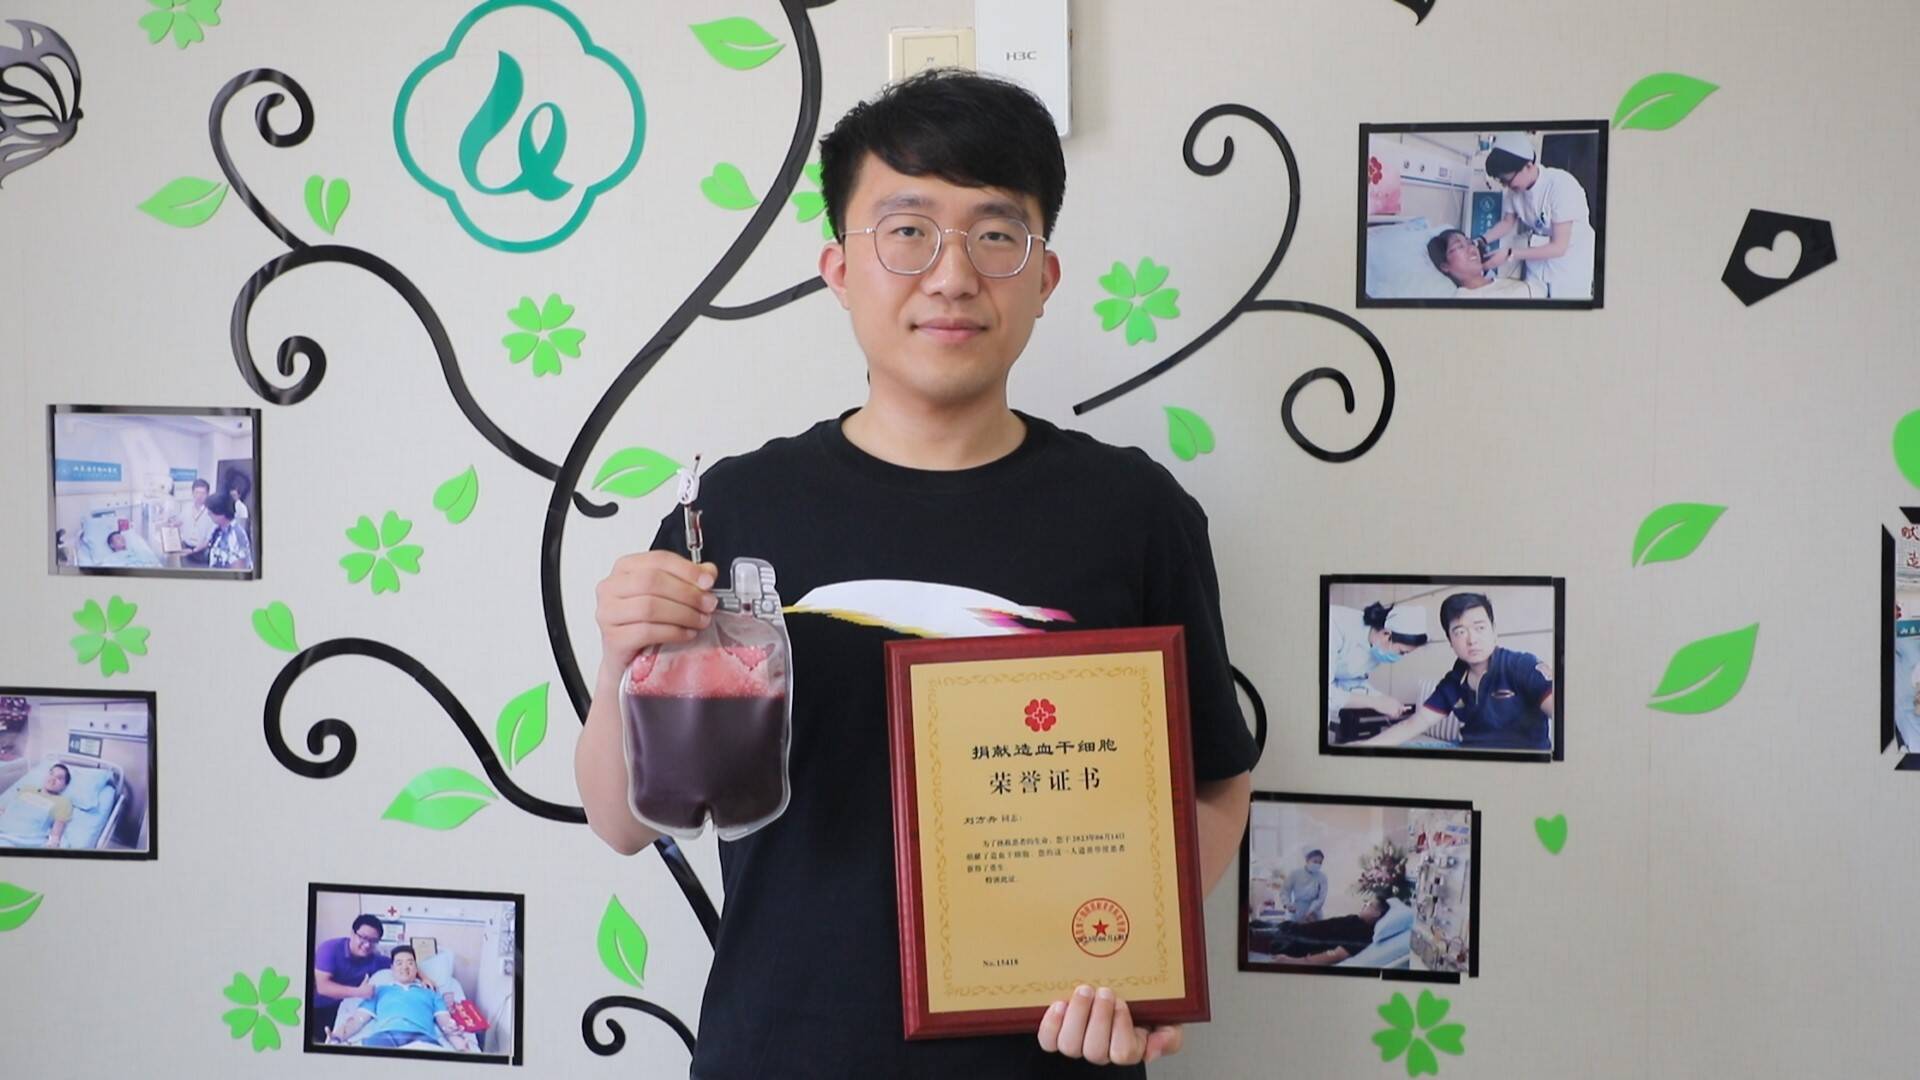 东营造血干细胞捐献志愿者刘方舟载誉归来